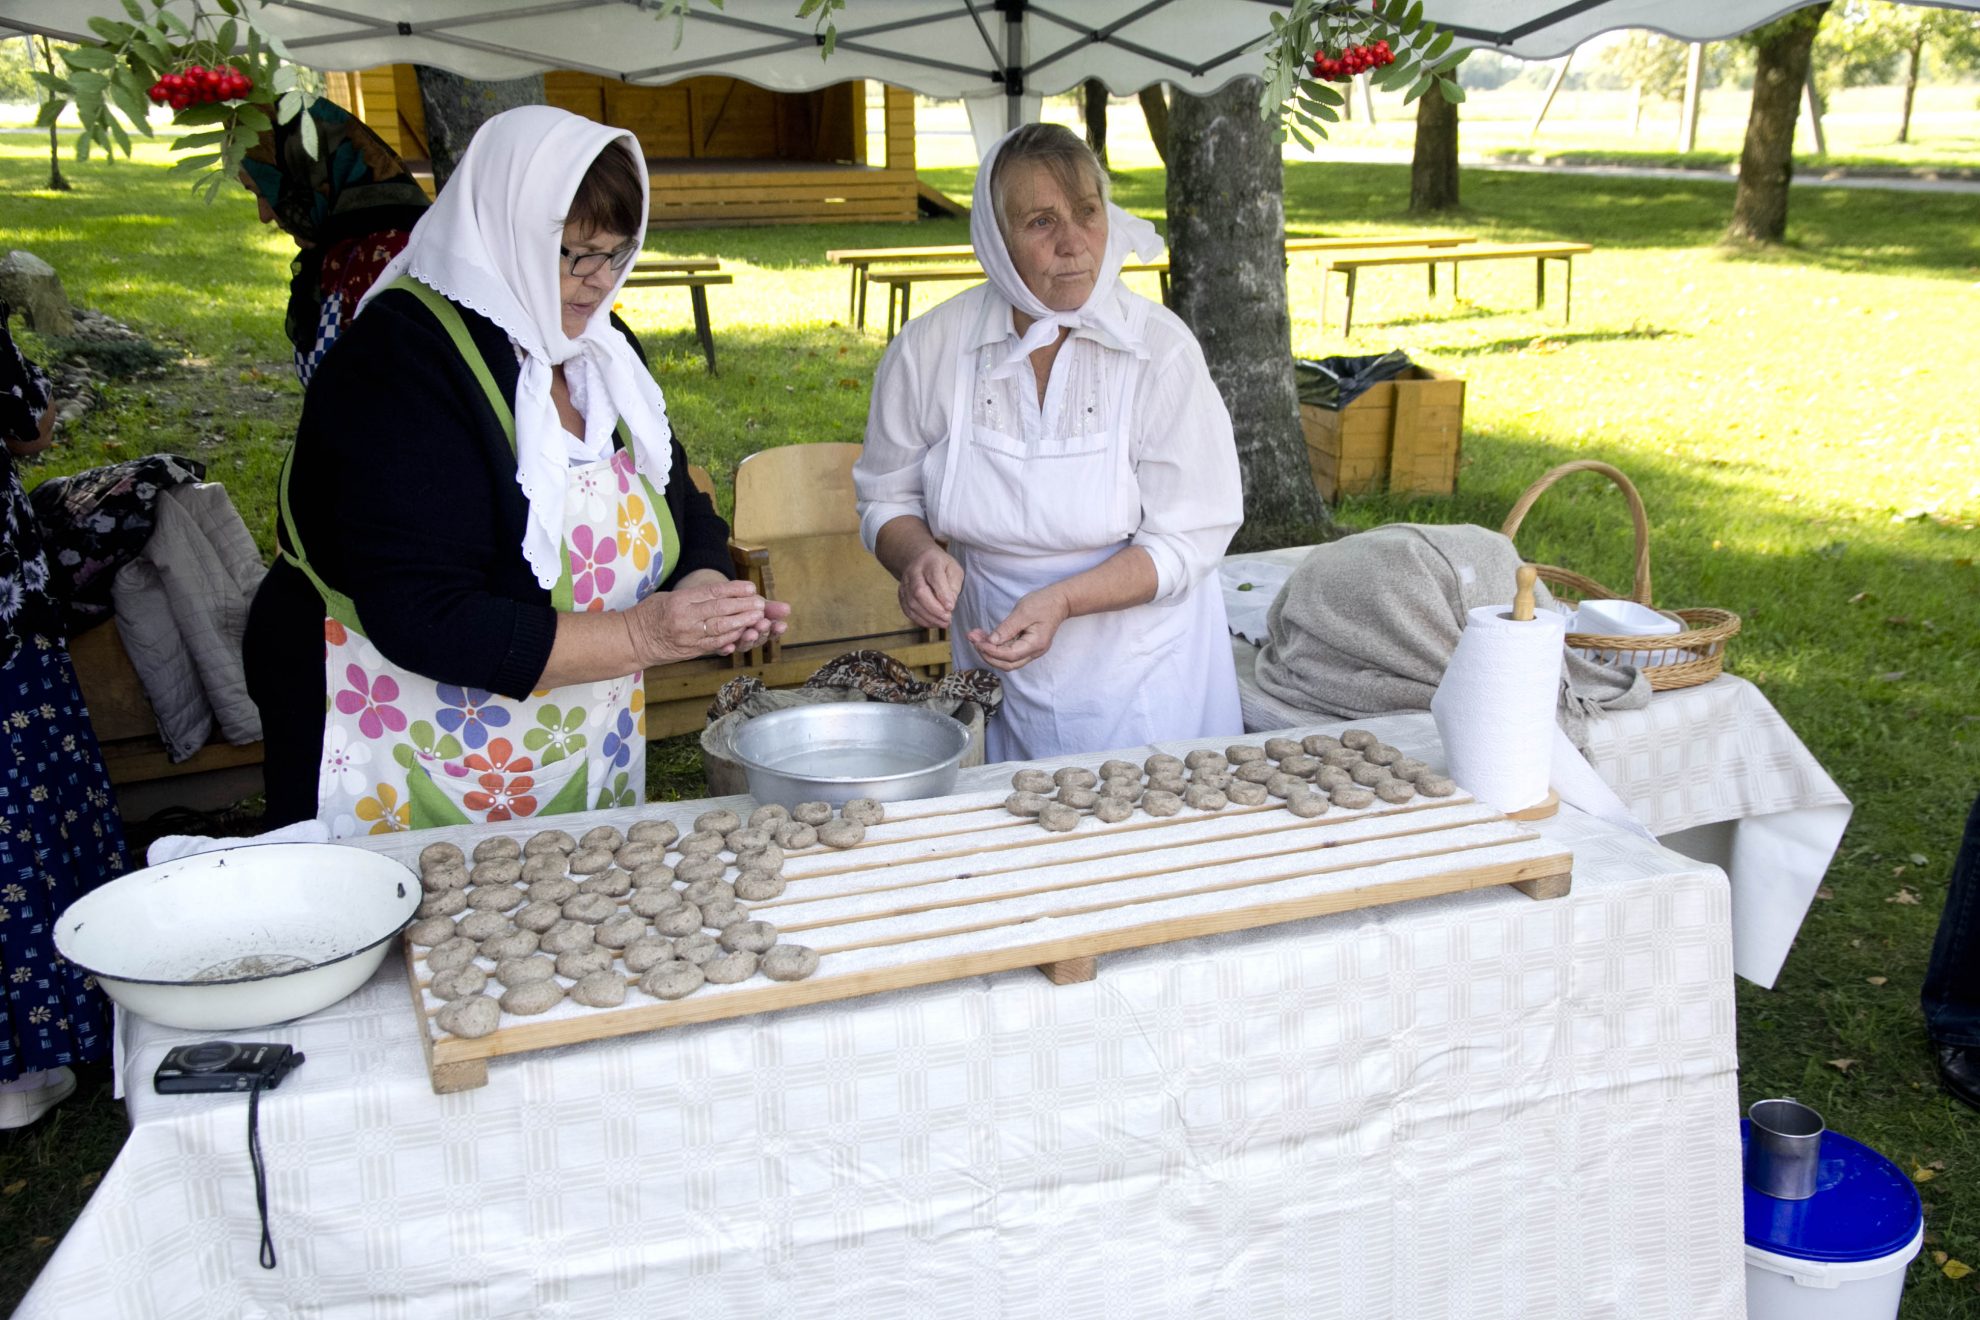 Trakiškio bendruomenė puoselėja kulinarinio paveldo tradicijas – po visų rudens darbų susirenka į bulvių šventę.